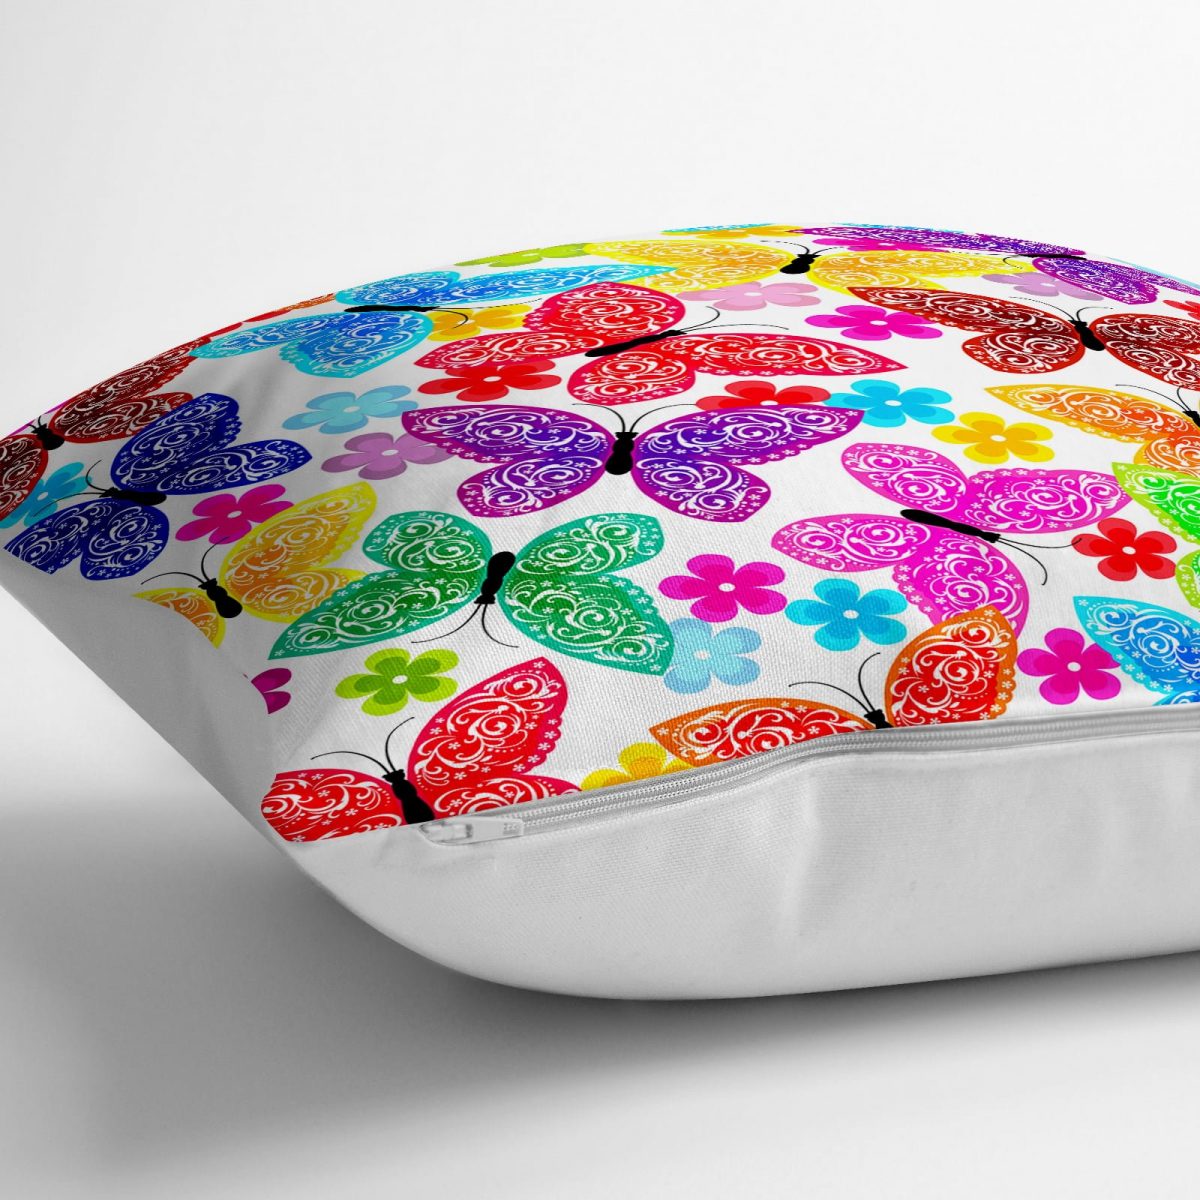 Beyaz Zeminde Renkli Kelebekler Tasarımlı Dijital Baskılı Yer Minderi - 70 x 70 cm Realhomes